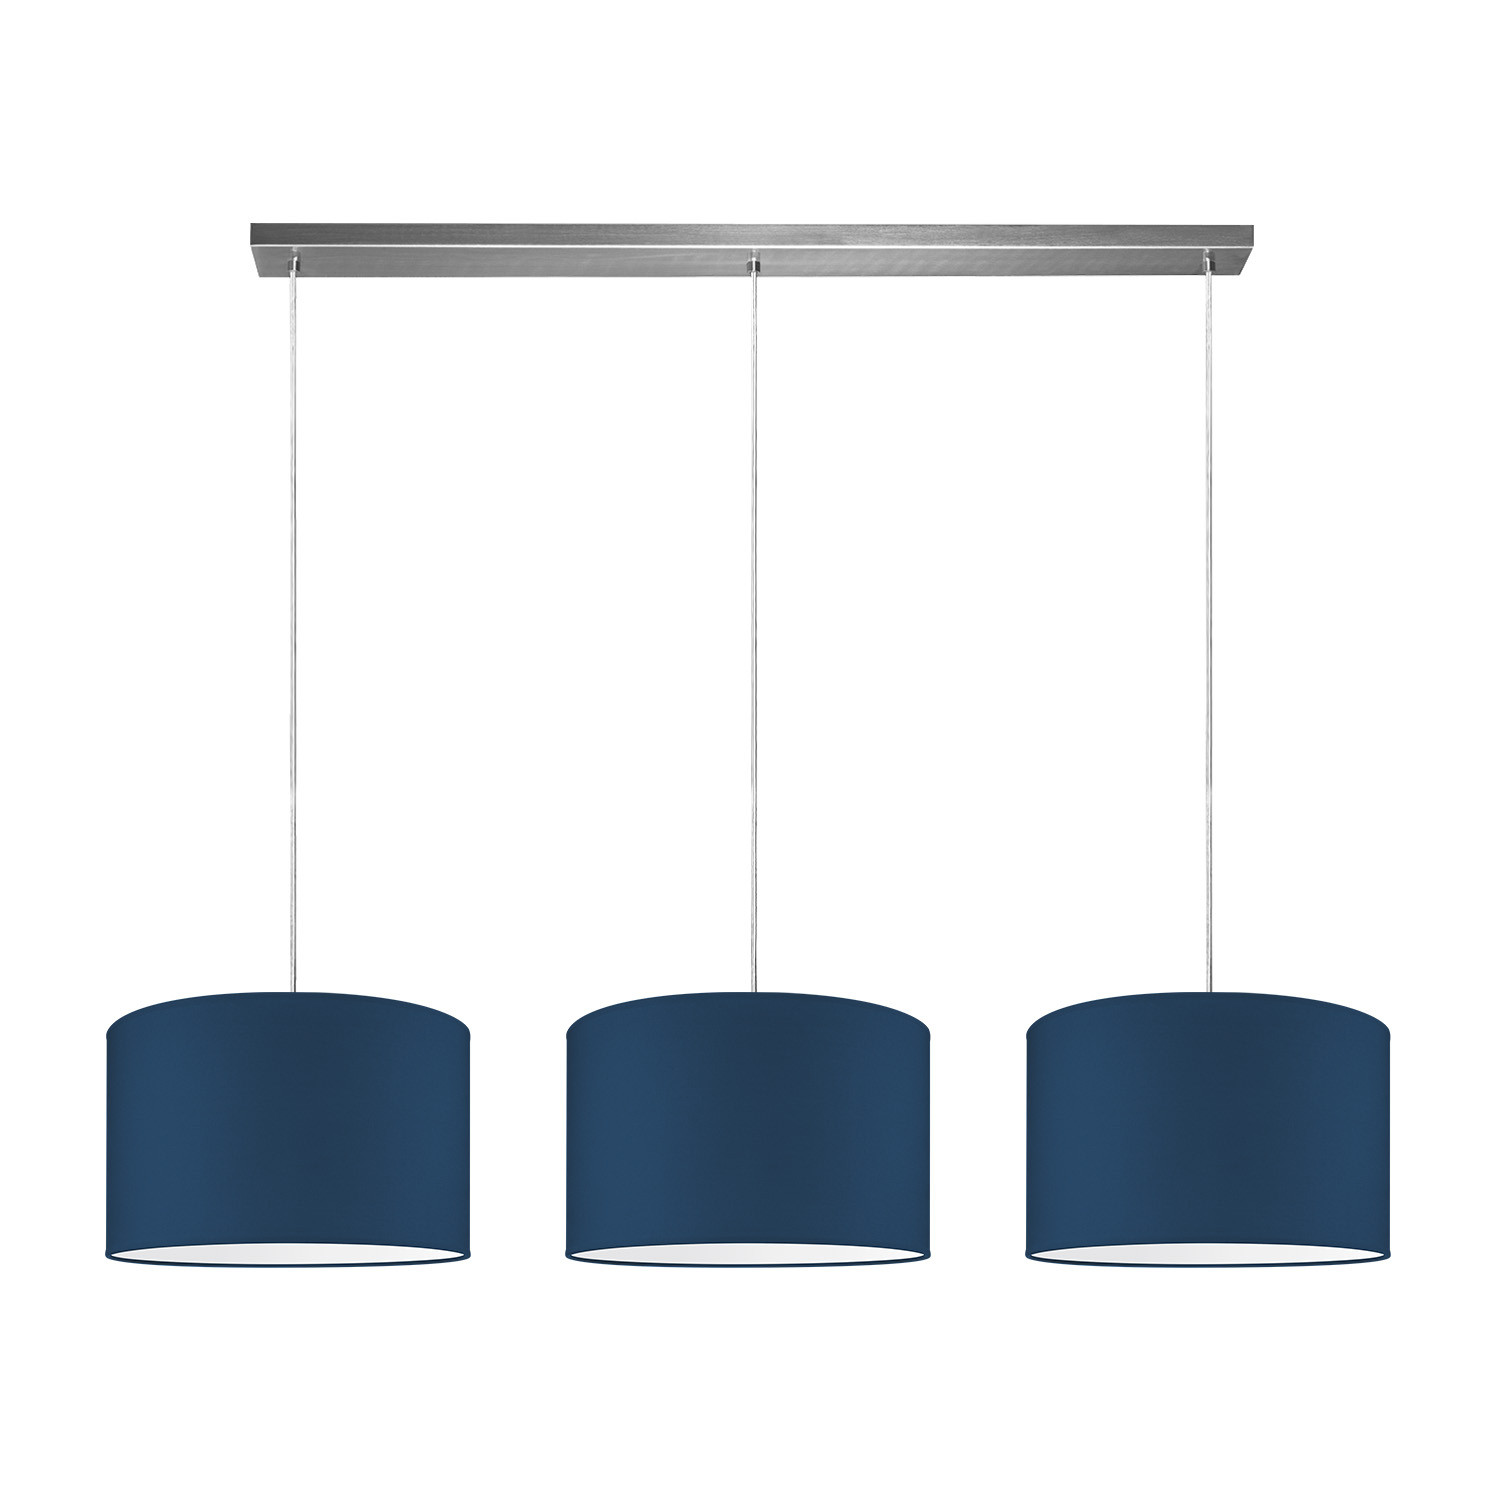 Light depot - hanglamp beam 3 bling Ø 35 cm - blauw - Outlet